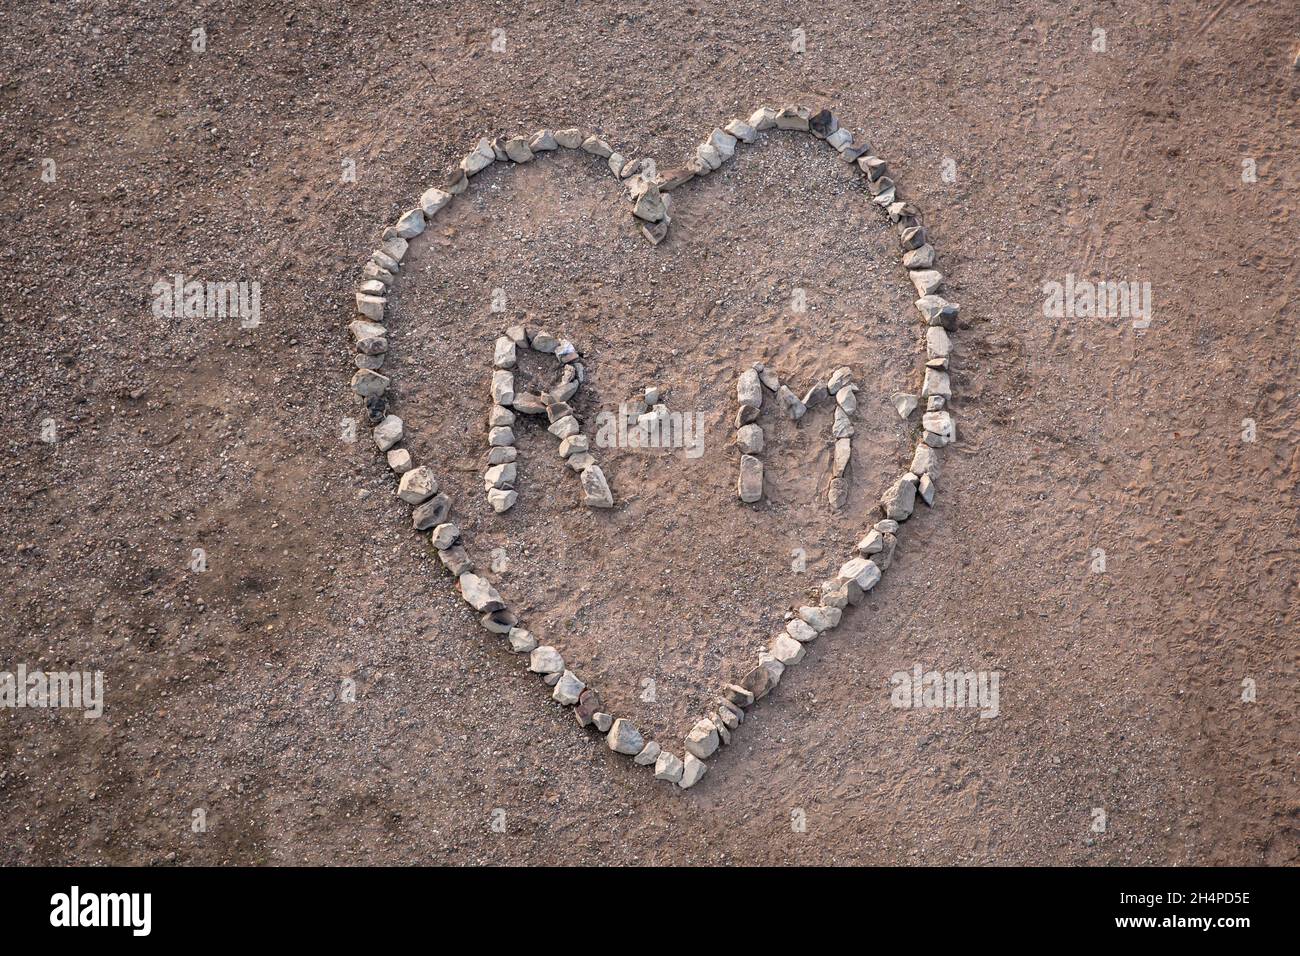 Un grand coeur ( environ 4 x 5 mètres ) fait de pierres de basalte du renforcement de la rive du Rhin dans le district de Poll, Cologne, Allemagne. ei Banque D'Images